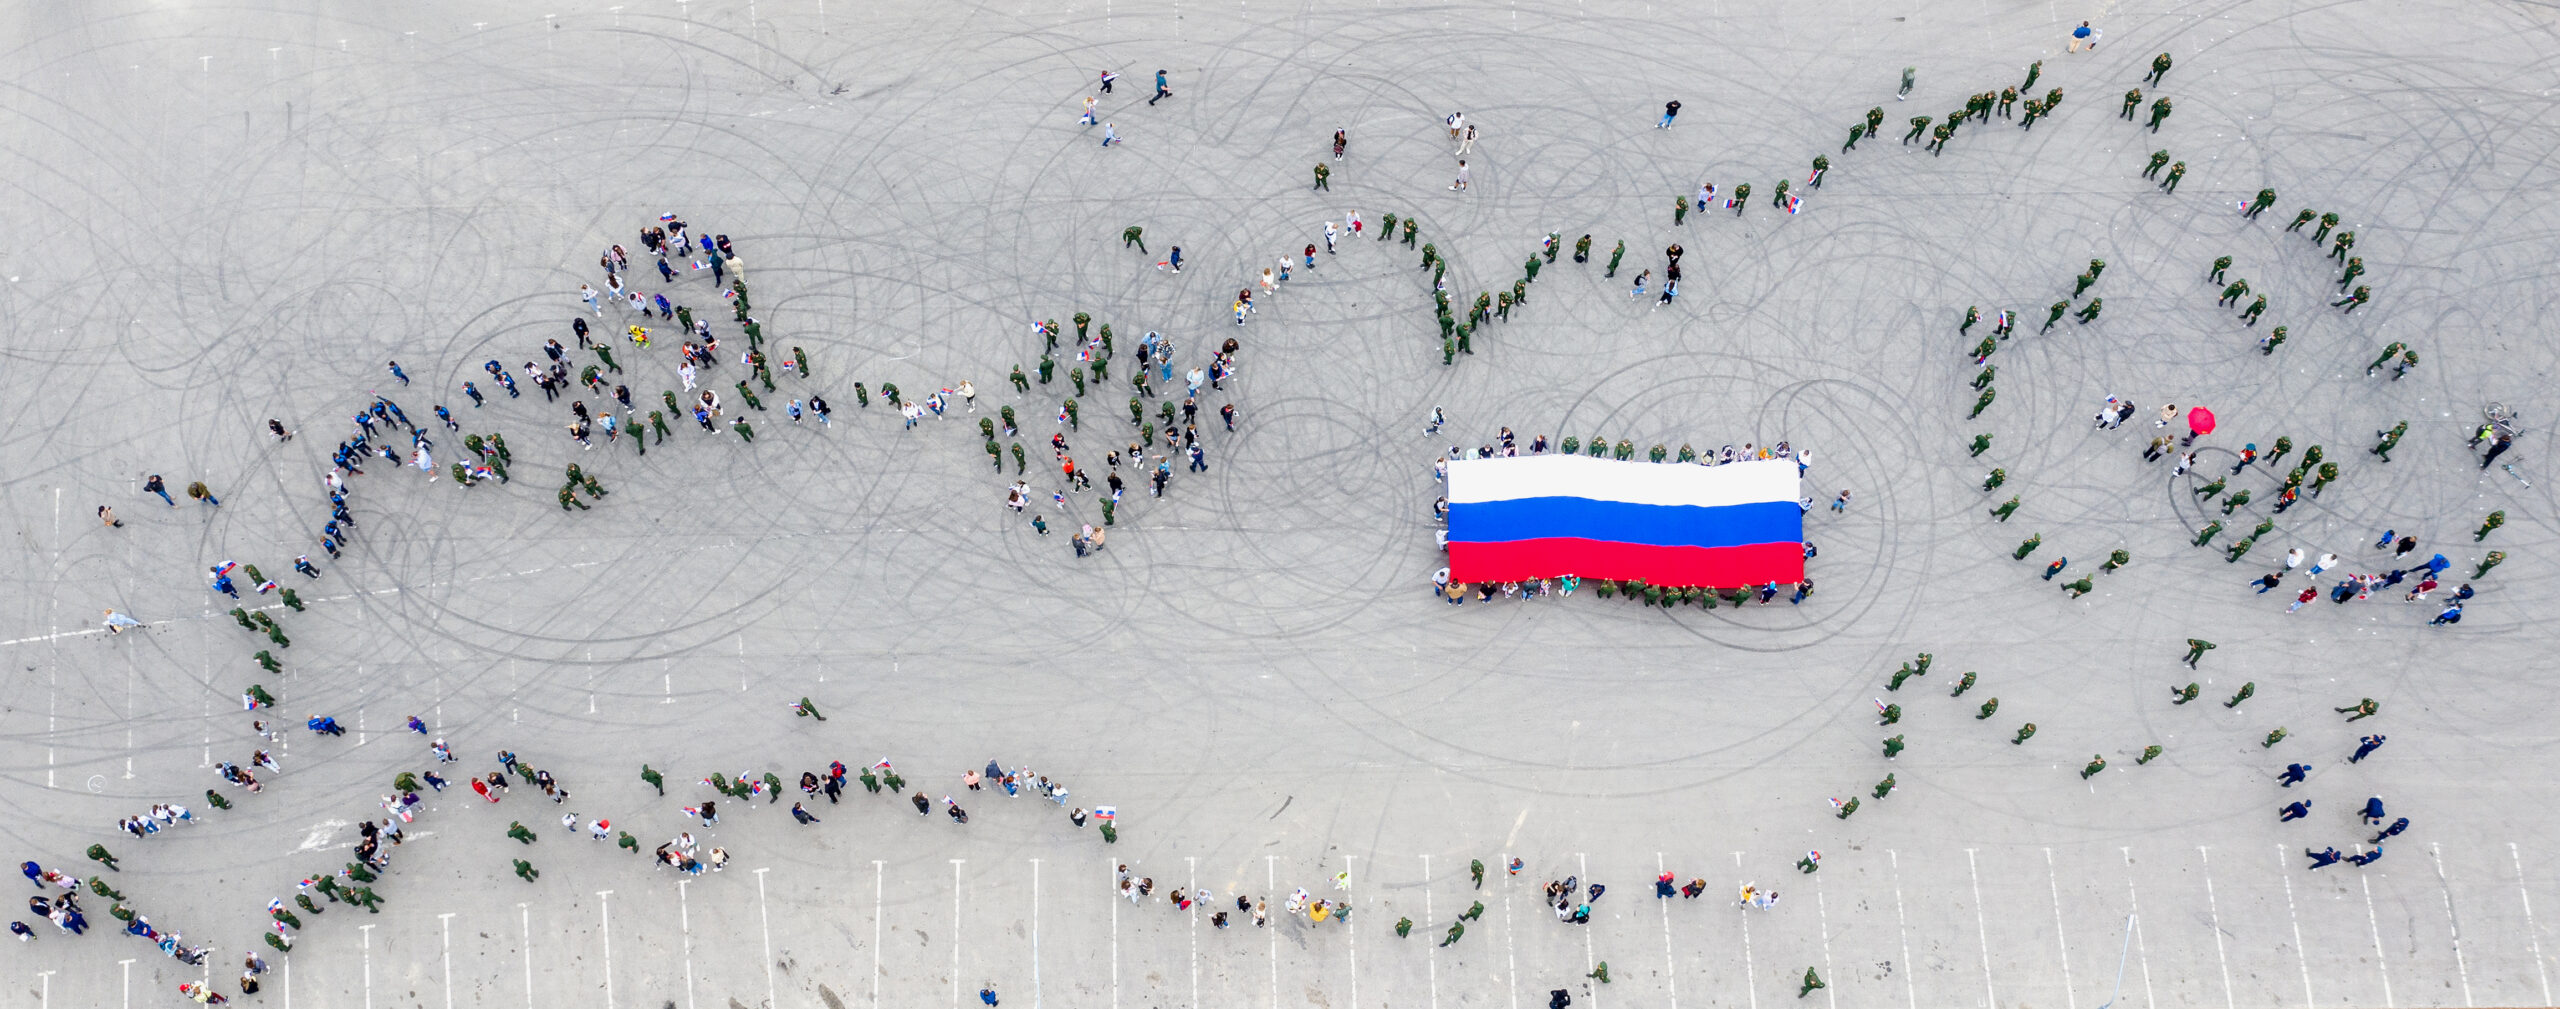 Жители Южно-Сахалинска образовали очертания России. Фото  Sergei Krasnoukhov/TASS/Scanpix/Leta